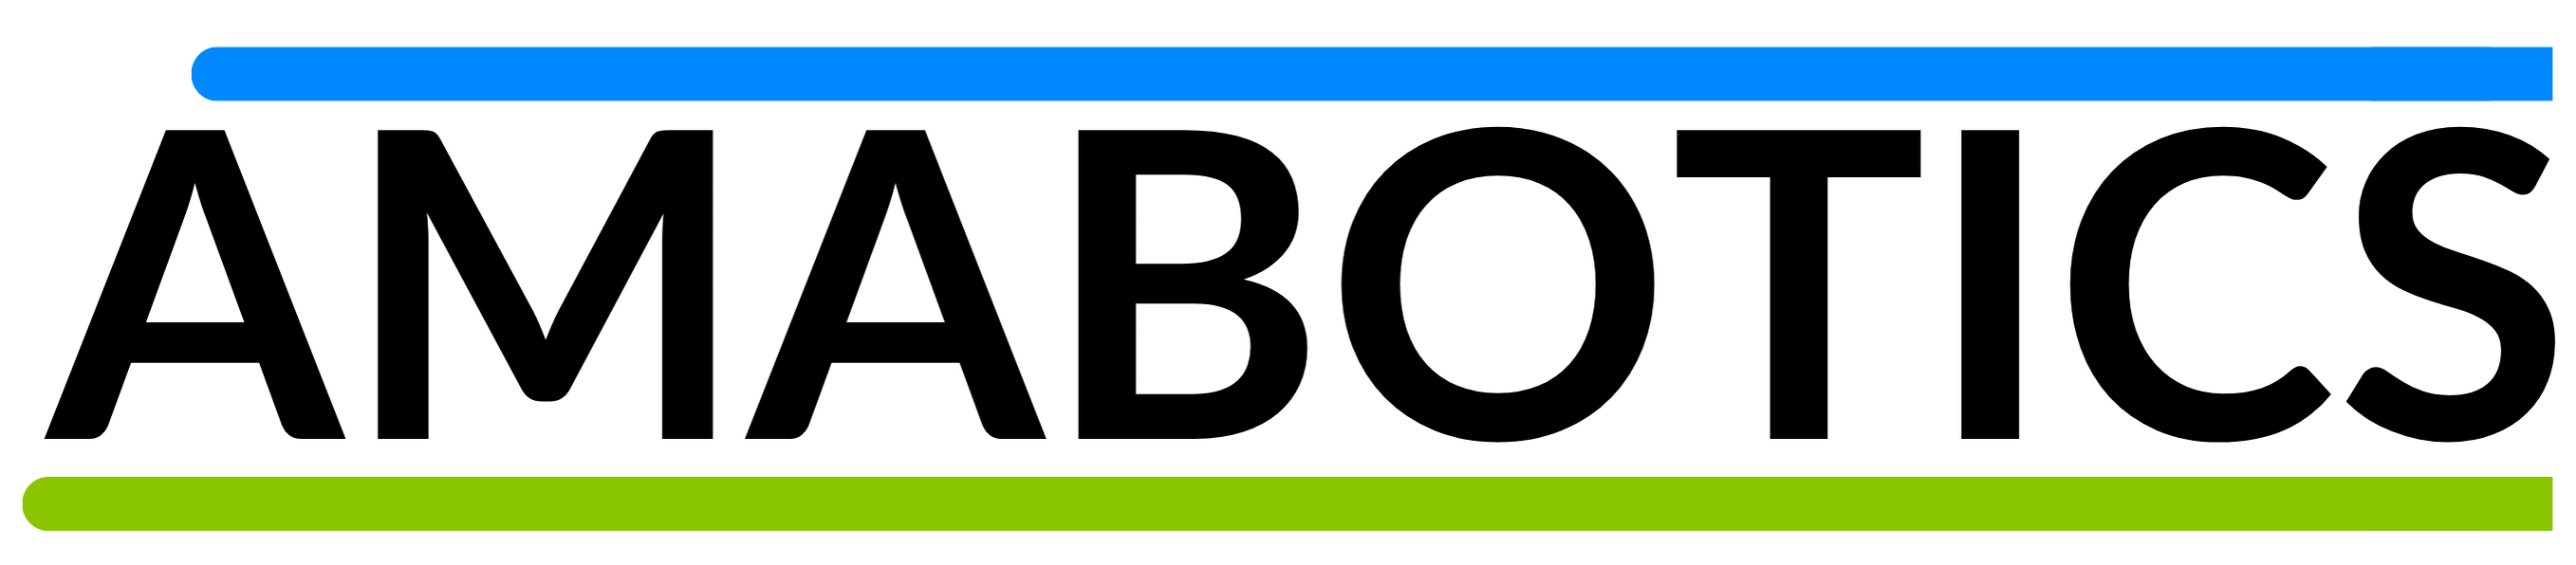 amabotics logo - robotics company that eliminates ingredient handling